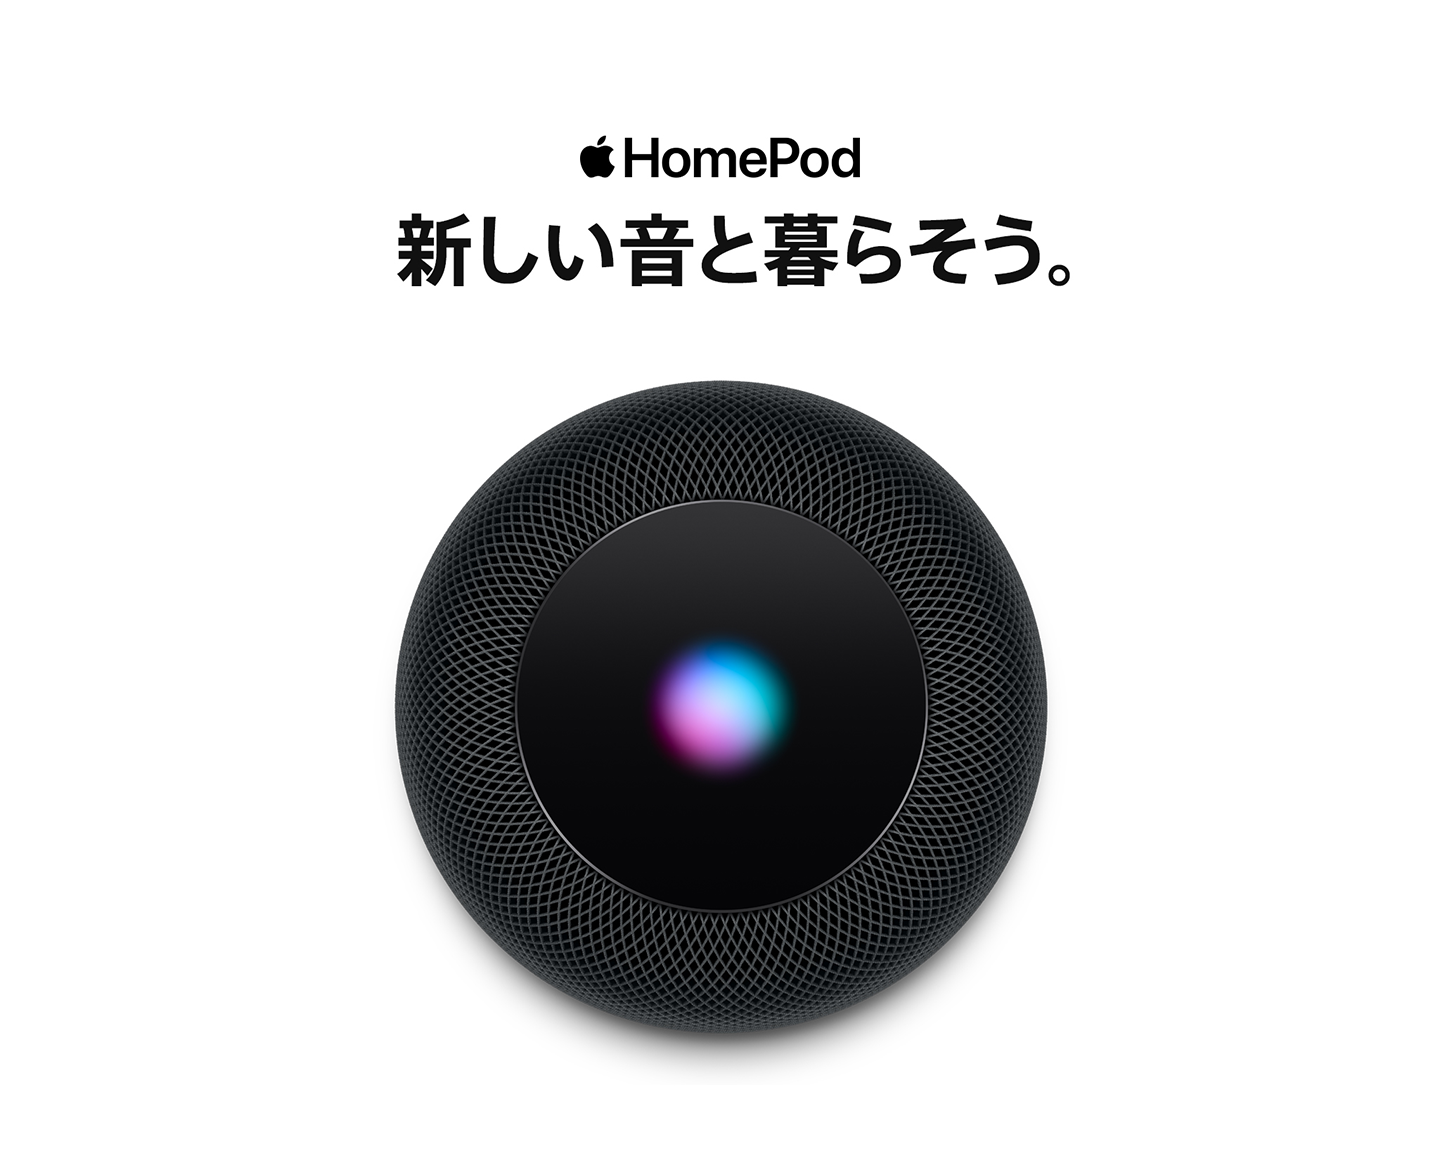 HomePod 新しい音と暮らそう。